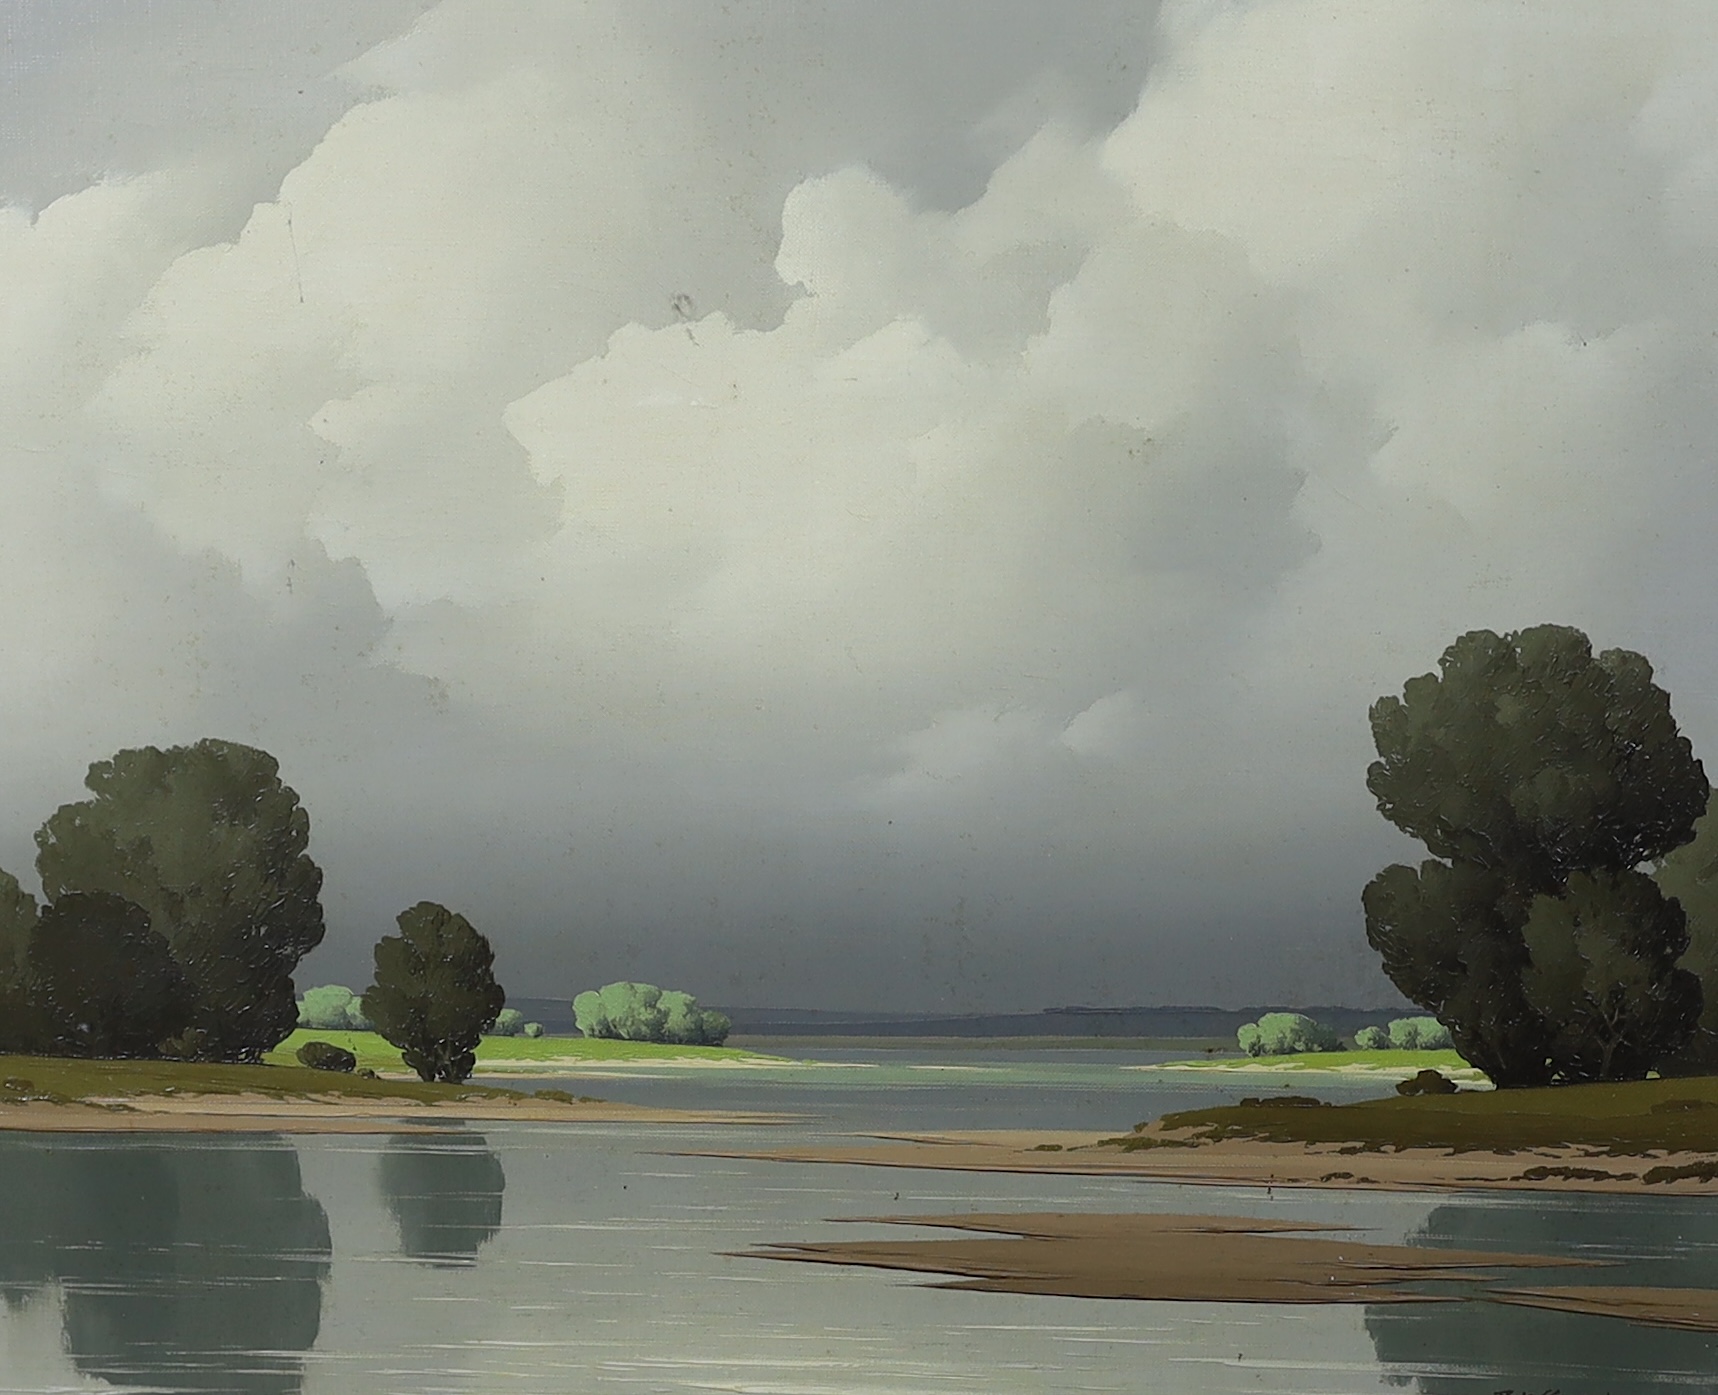 Pierre de Clausades (French, 1910-1976), 'Paysage de la Loire', oil on canvas, 52 x 64cm